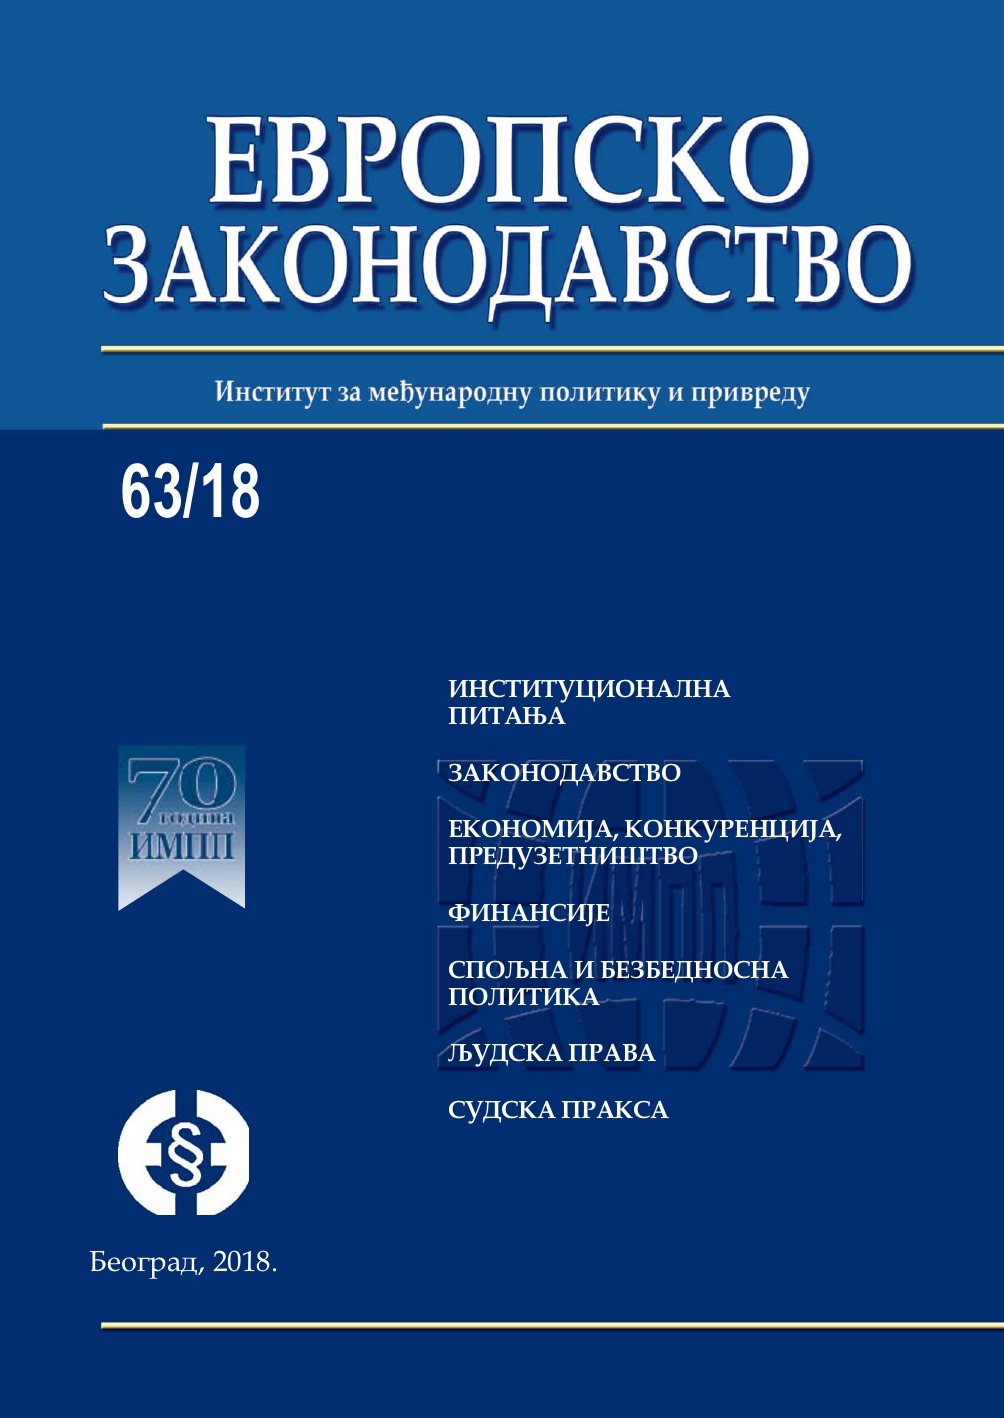 Упоредни правни преглед кривичног дела - несавесно пружање лекарске помоћи у законодавствима држава бивше Југославије